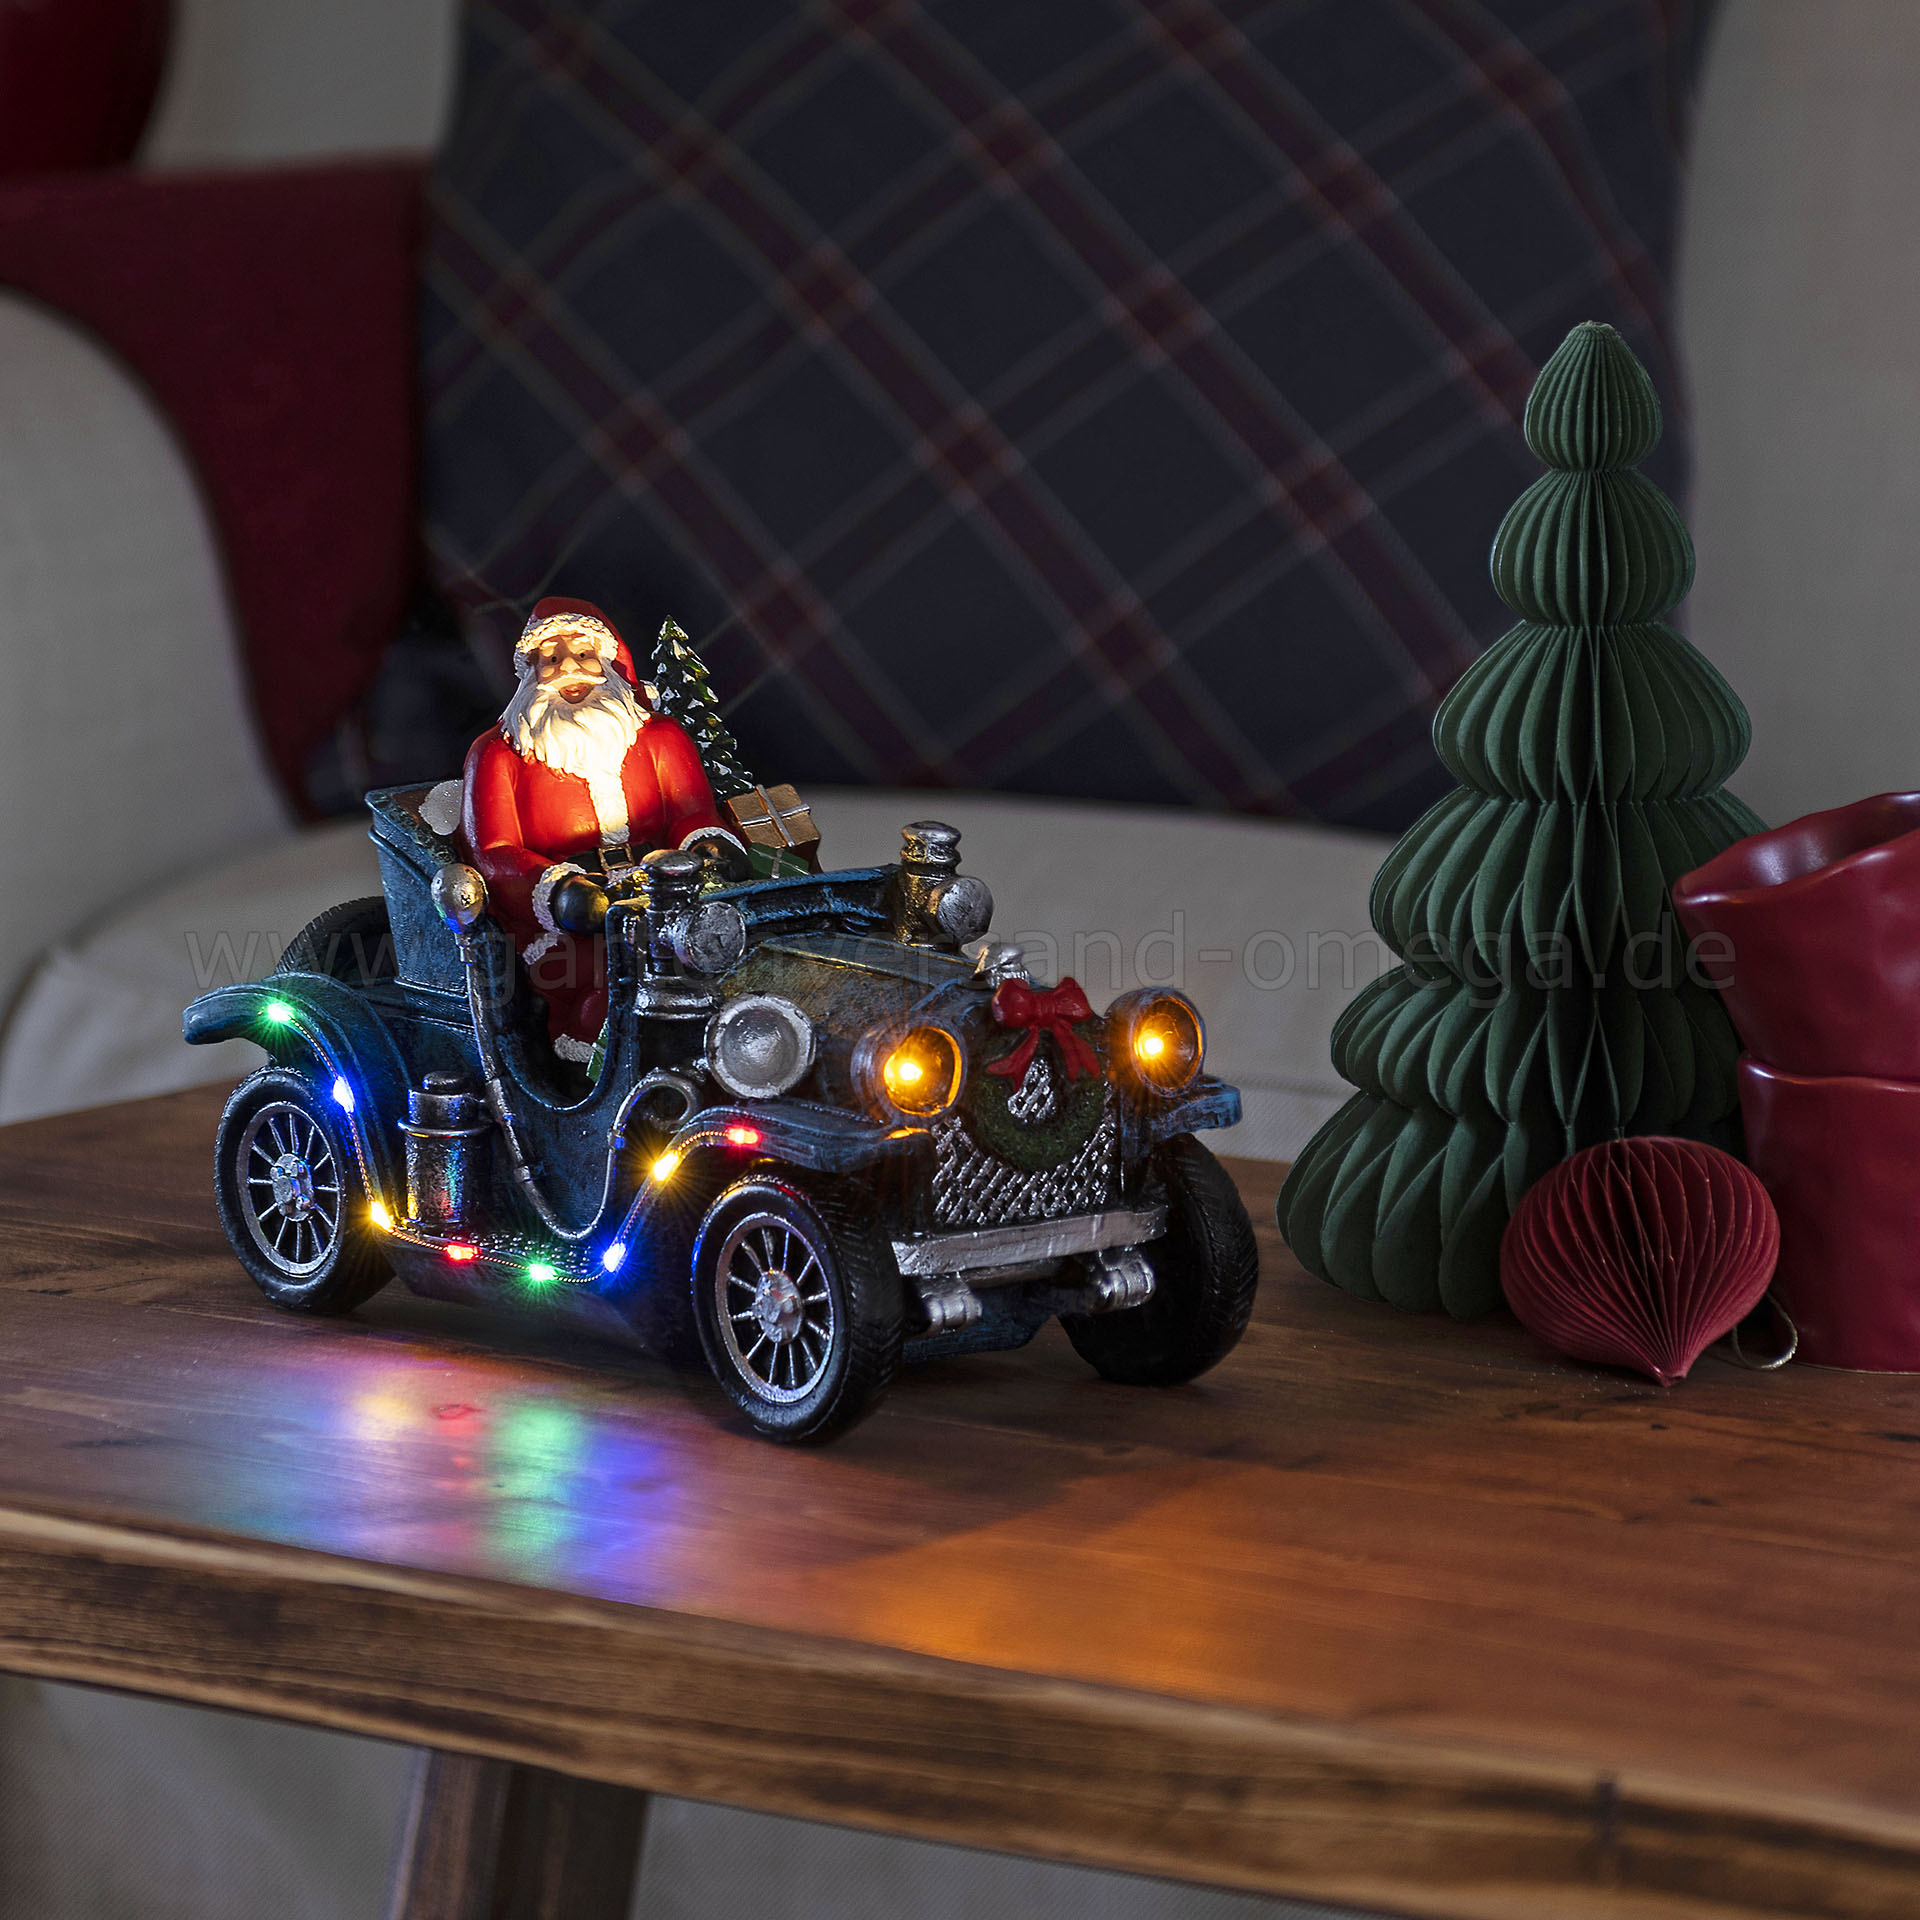 LED-Szenerie Weihnachtsmann im Auto - LED Auto Weihnachtsmann,  Weihnachtsdeko Auto, LED-Figur Auto mit Weihnachtsmann,  Schreibtischdekoration Weihnachten, Oldtimer Weihnachtsmann, Deko-Auto mit  LED-Beleuchtung